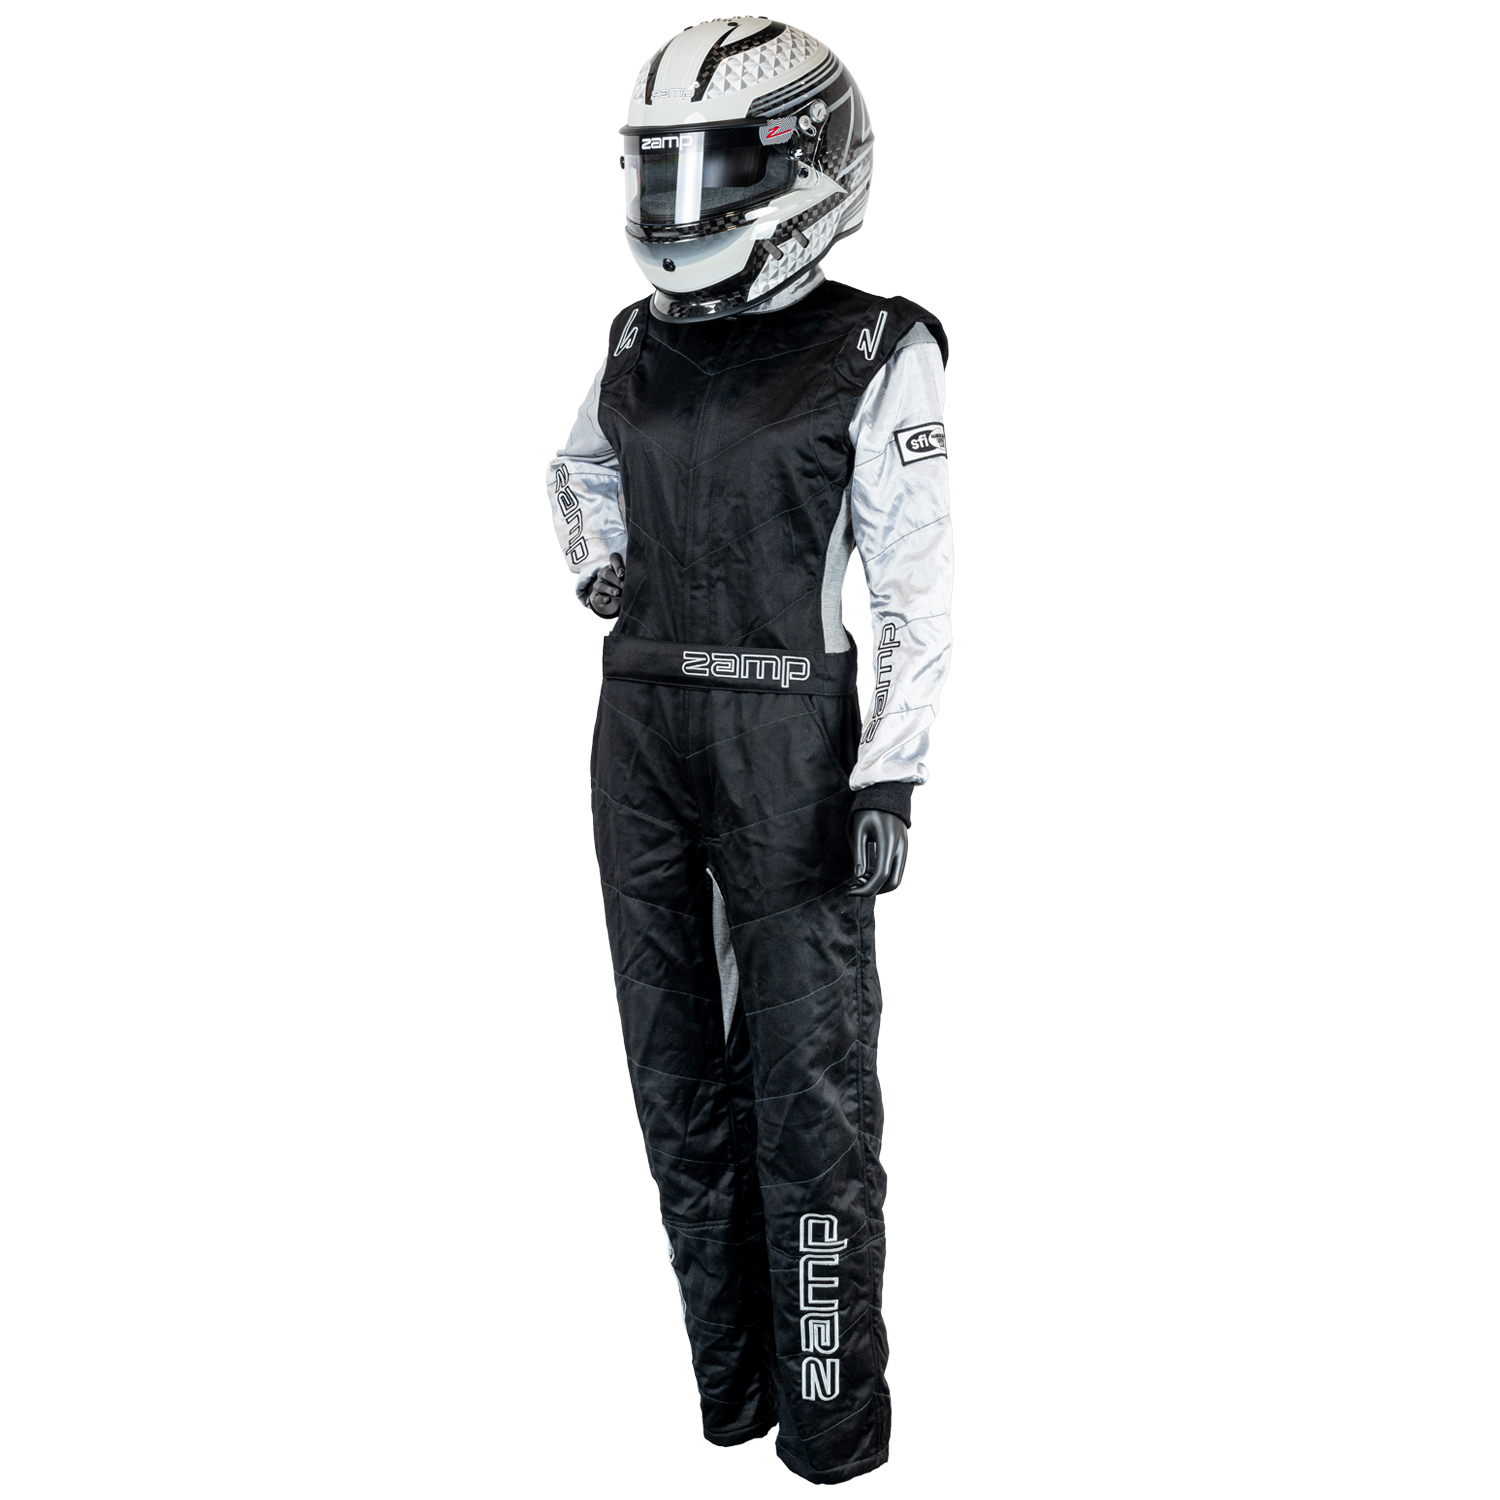 ZR-40 Race Suit